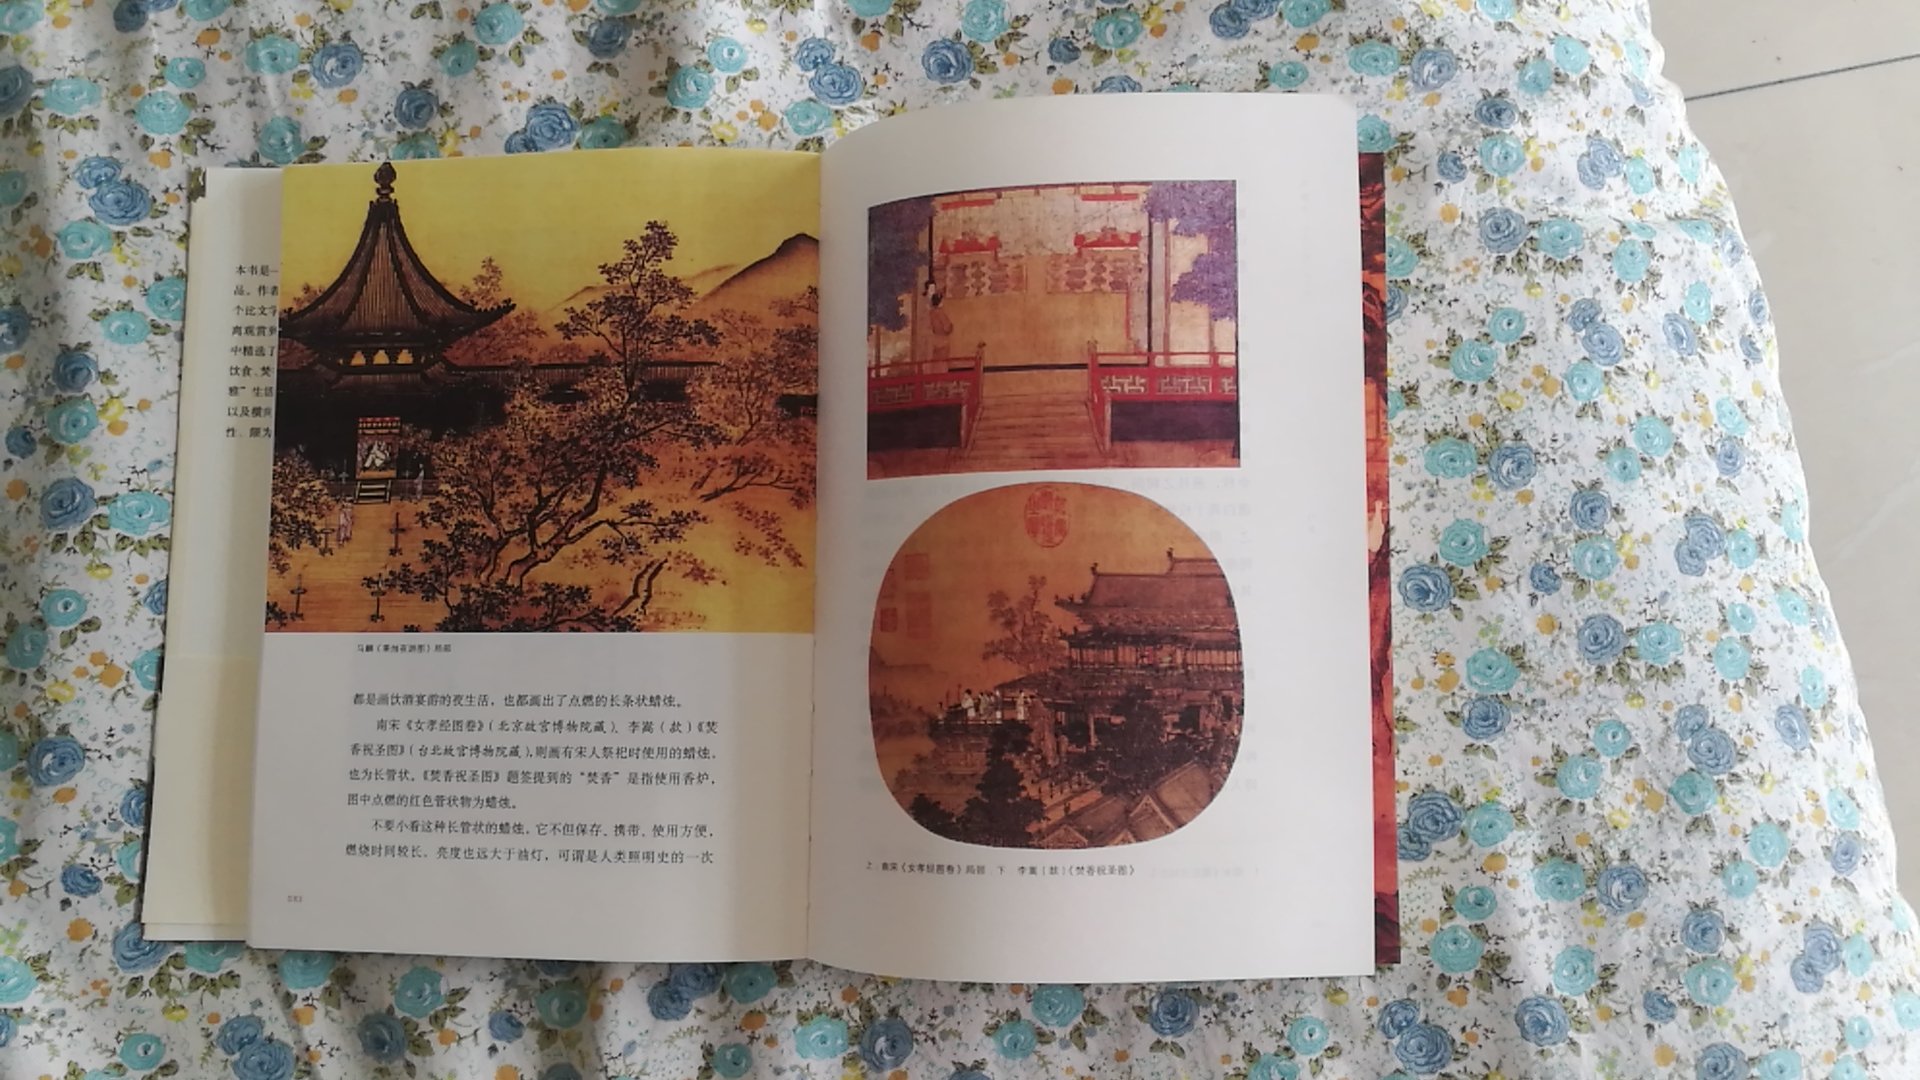 书中从：雅趣、社会、城市、商业和礼仪五方面详细介绍了大宋文化。图形并茂。让人全面了解中国历史的辉煌！值得阅读！另外装订的也不错！